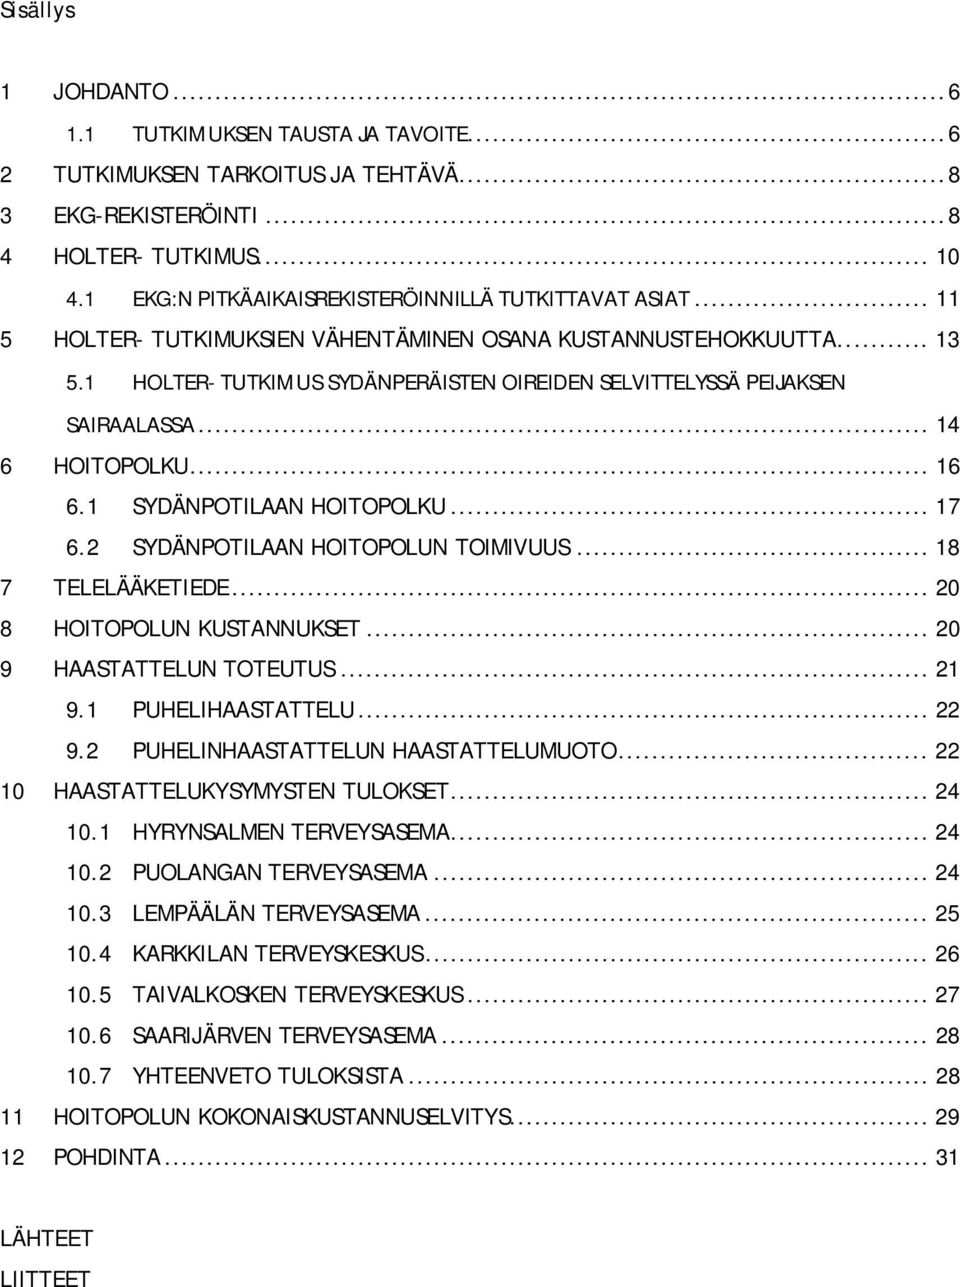 1 HOLTER- TUTKIMUS SYDÄNPERÄISTEN OIREIDEN SELVITTELYSSÄ PEIJAKSEN SAIRAALASSA... 14 6 HOITOPOLKU... 16 6.1 SYDÄNPOTILAAN HOITOPOLKU... 17 6.2 SYDÄNPOTILAAN HOITOPOLUN TOIMIVUUS... 18 7 TELELÄÄKETIEDE.